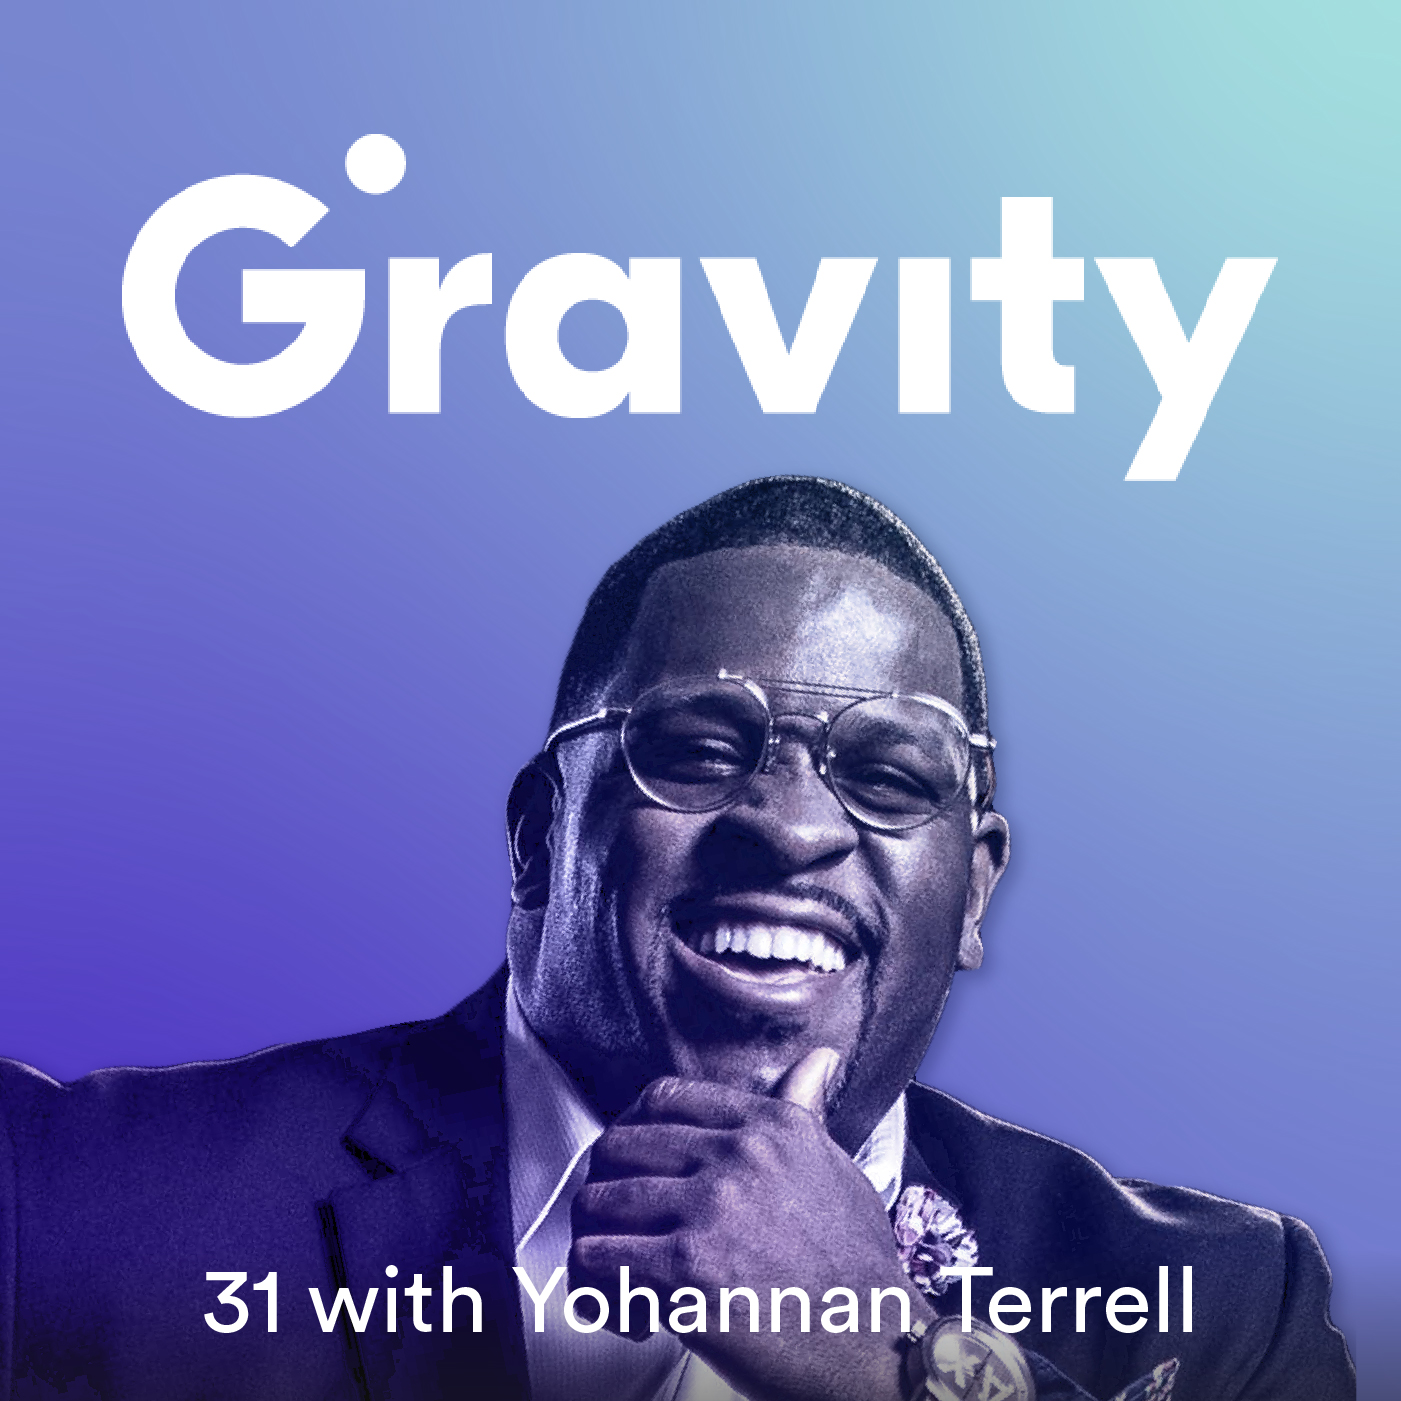 Artwork for podcast Gravity